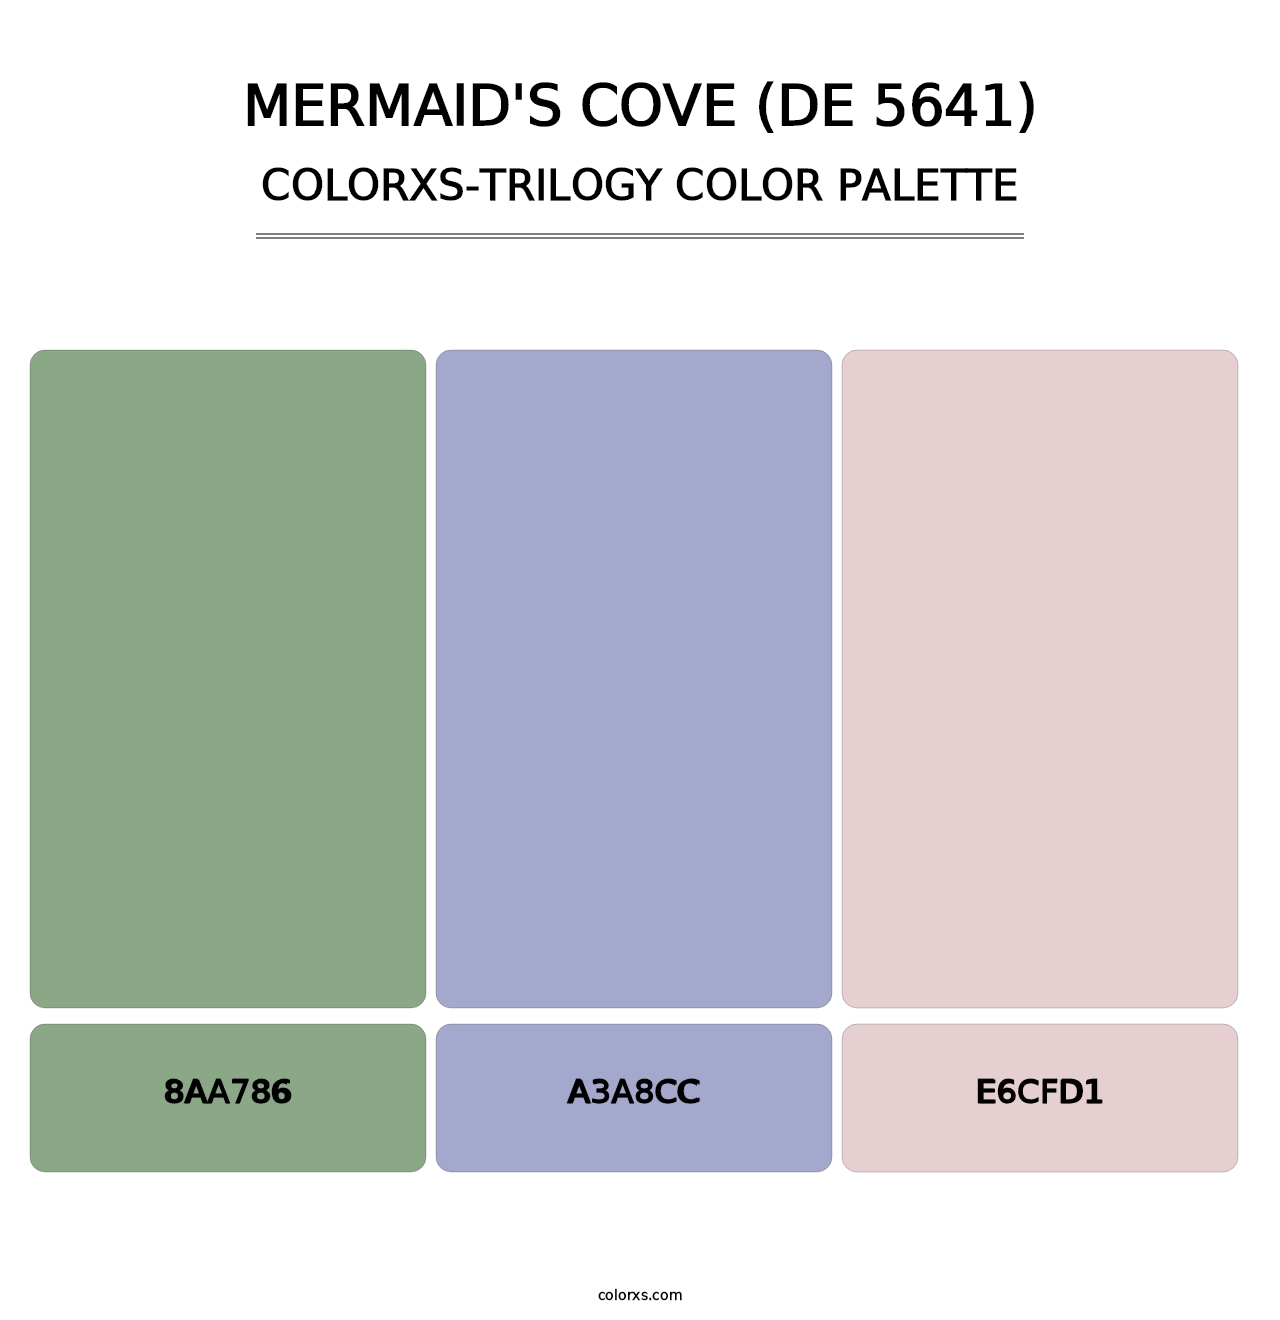 Mermaid's Cove (DE 5641) - Colorxs Trilogy Palette